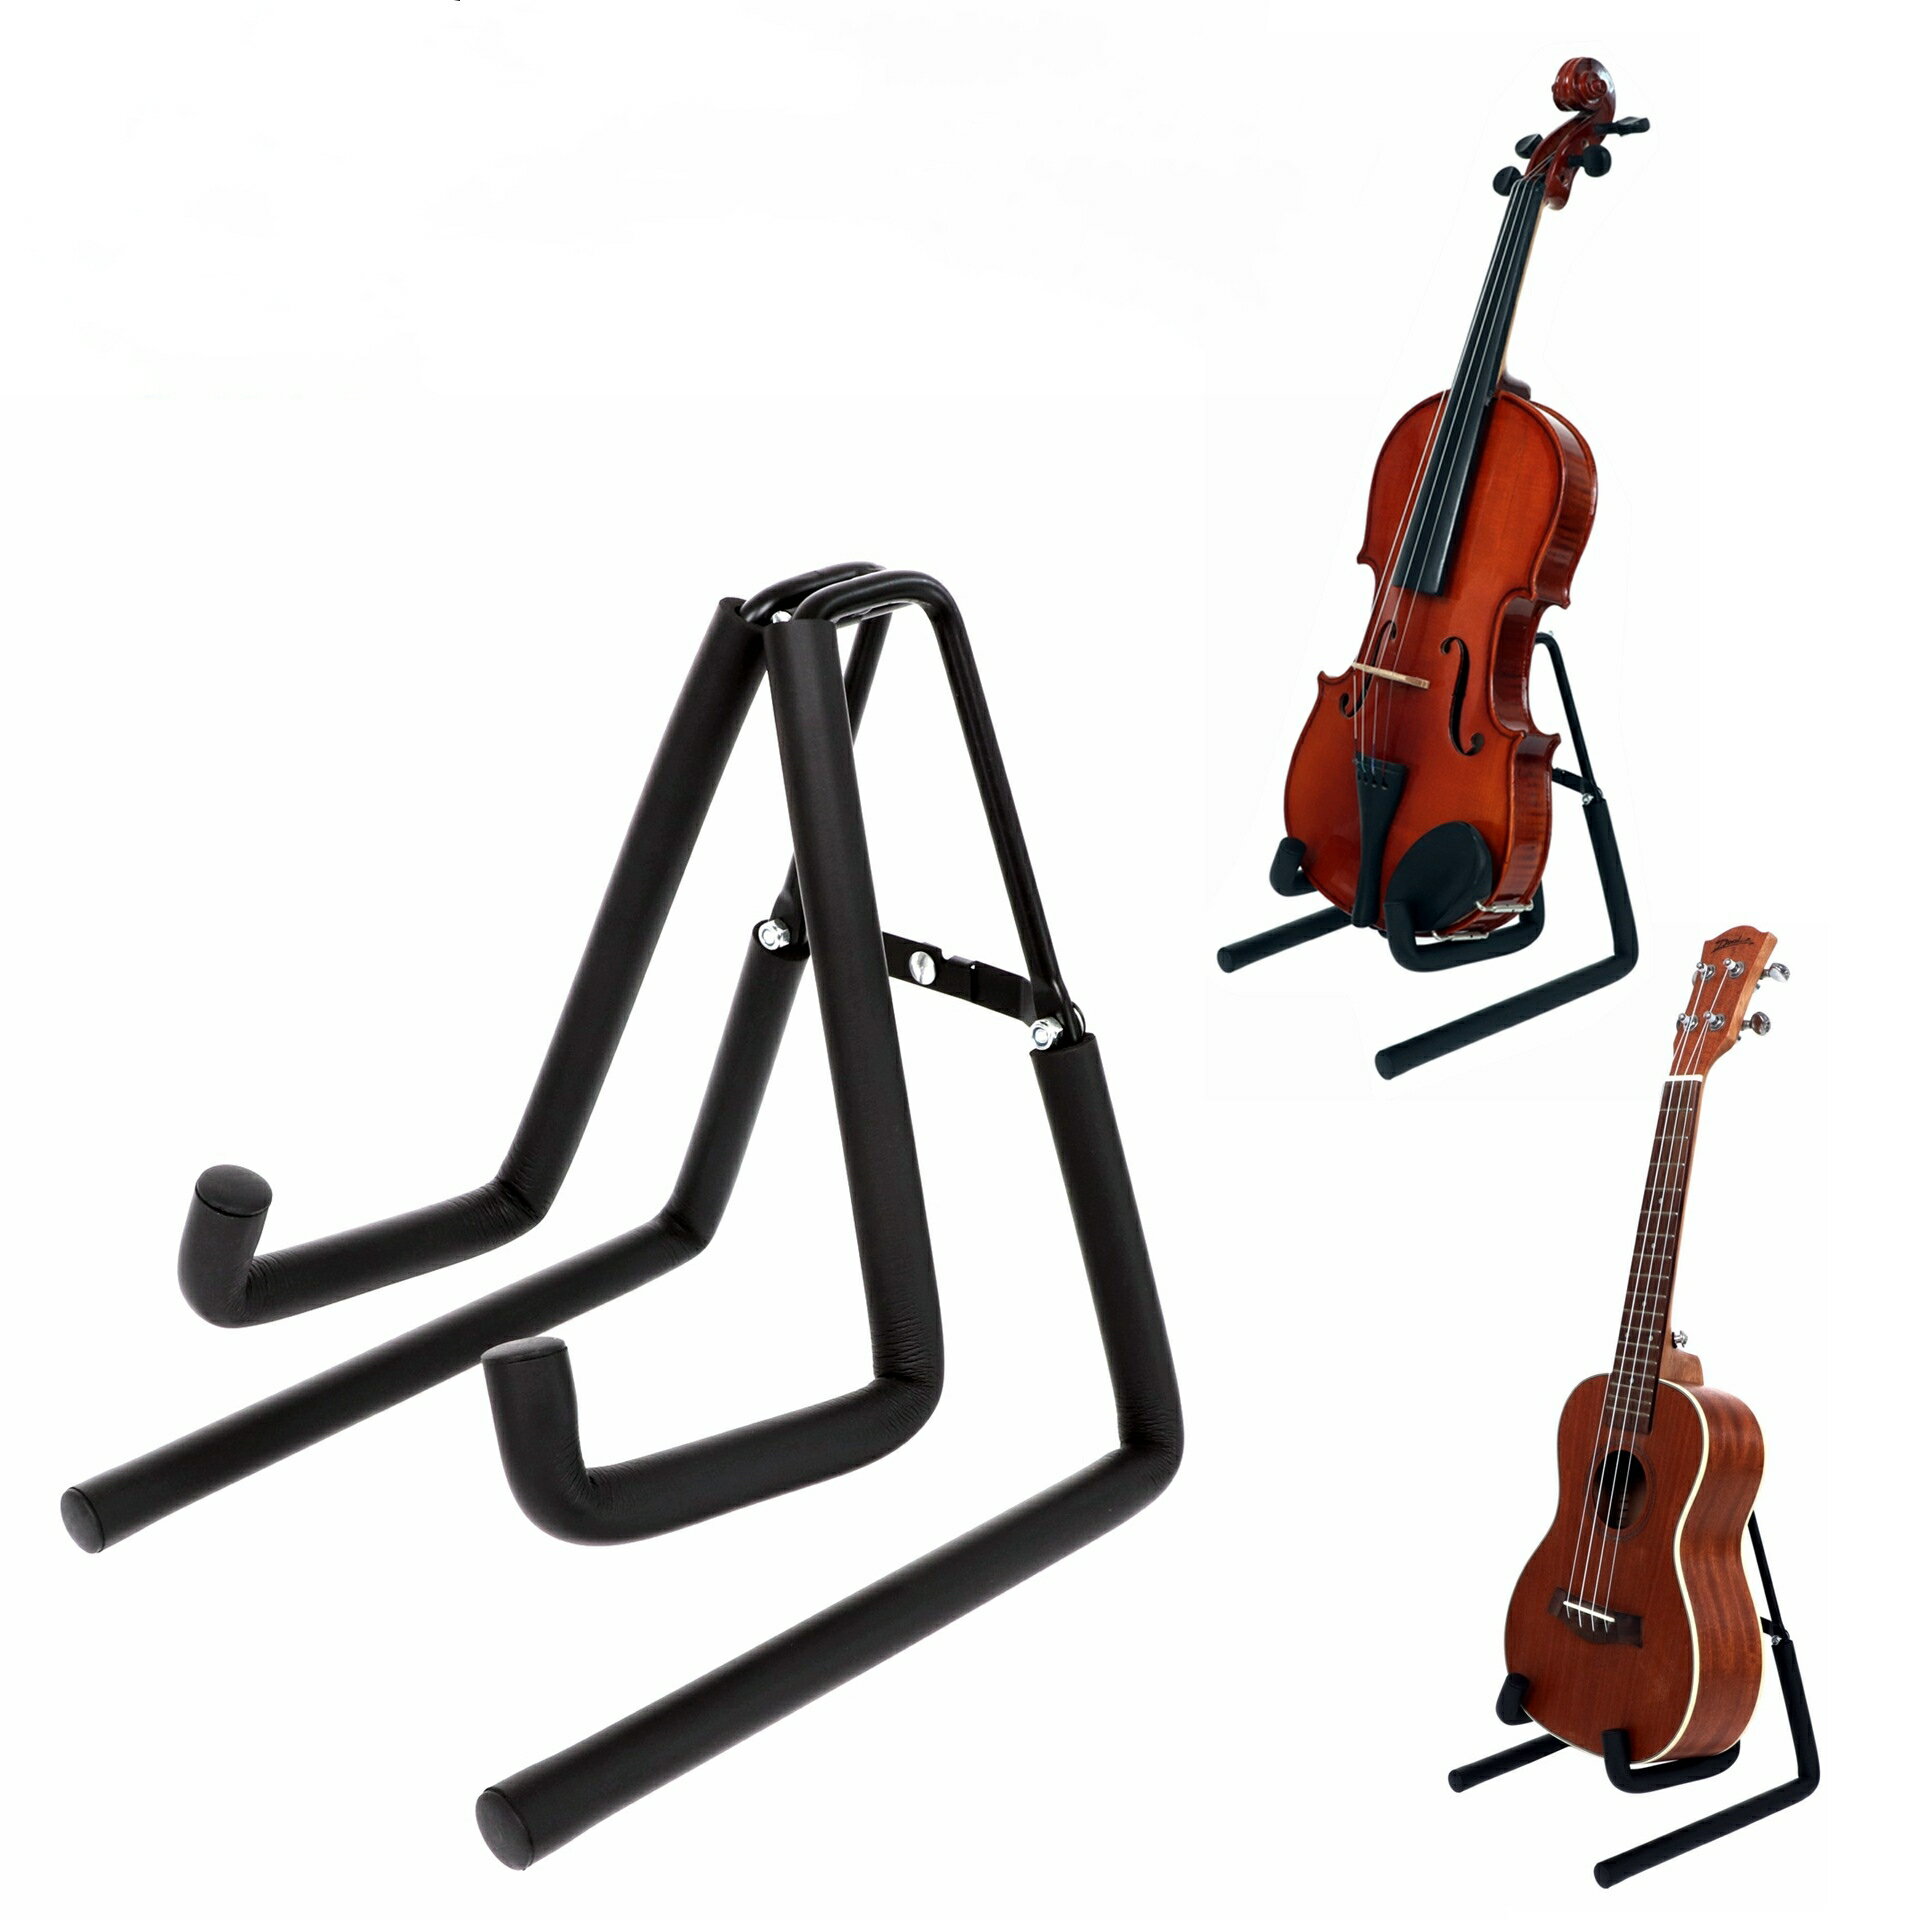 楽器対応性: 楽器スタンドは、バイオリン、ギター、ウクレレ、ベース、サックスなど、さまざまな楽器に対応する設計がされています。それぞれの楽器に適した形状やサイズのスタンドがあります。 折りたたみ式: 多くの楽器スタンドは折りたたみ可能なデザインになっており、使用しないときにはコンパクトに収納することができます。これにより、持ち運びや収納が簡単になります。 滑り止め機能: 楽器スタンドには、楽器を安定させるための滑り止め機能が備わっています。底面や接触面に滑り止め素材が使用されており、楽器が倒れることを防ぎます。 耐久性: 高品質な素材で作られており、安定性と耐久性が確保されています。楽器を安全に保管するために頑丈な構造が特徴です。 収納用アクセサリー: 一部の楽器スタンドには、楽譜やアクセサリーを収納するための追加の棚やフックが付いています。これにより、楽器周りのアイテムを整理整頓することができます。